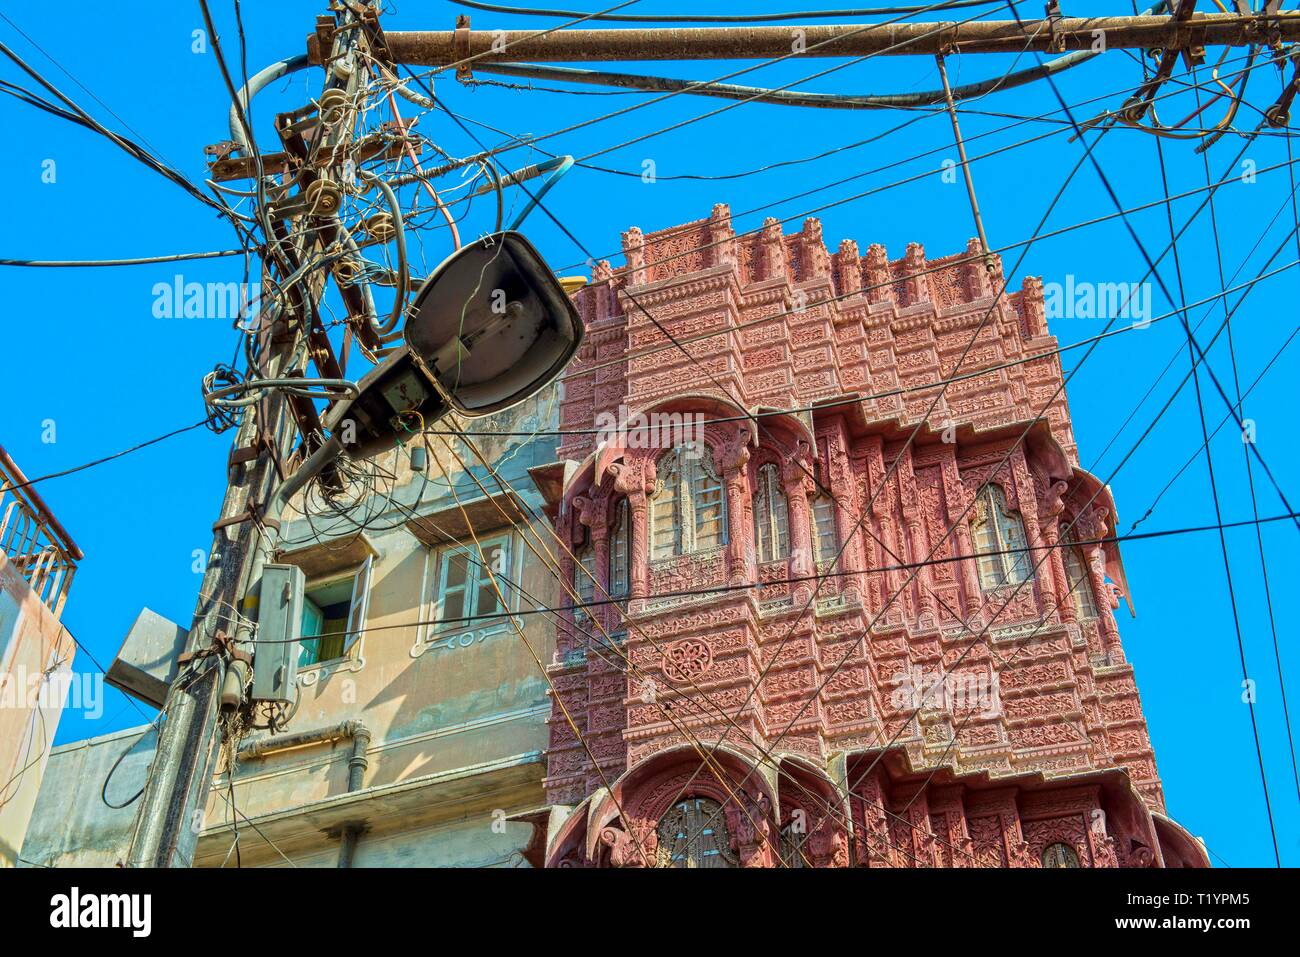 Indien, Rajasthan, BIKANER Gewirr von Stromleitungen im Kontrast zu einem gepflegten, historischen Gebäude in der Altstadt von Bikaner Stockfoto